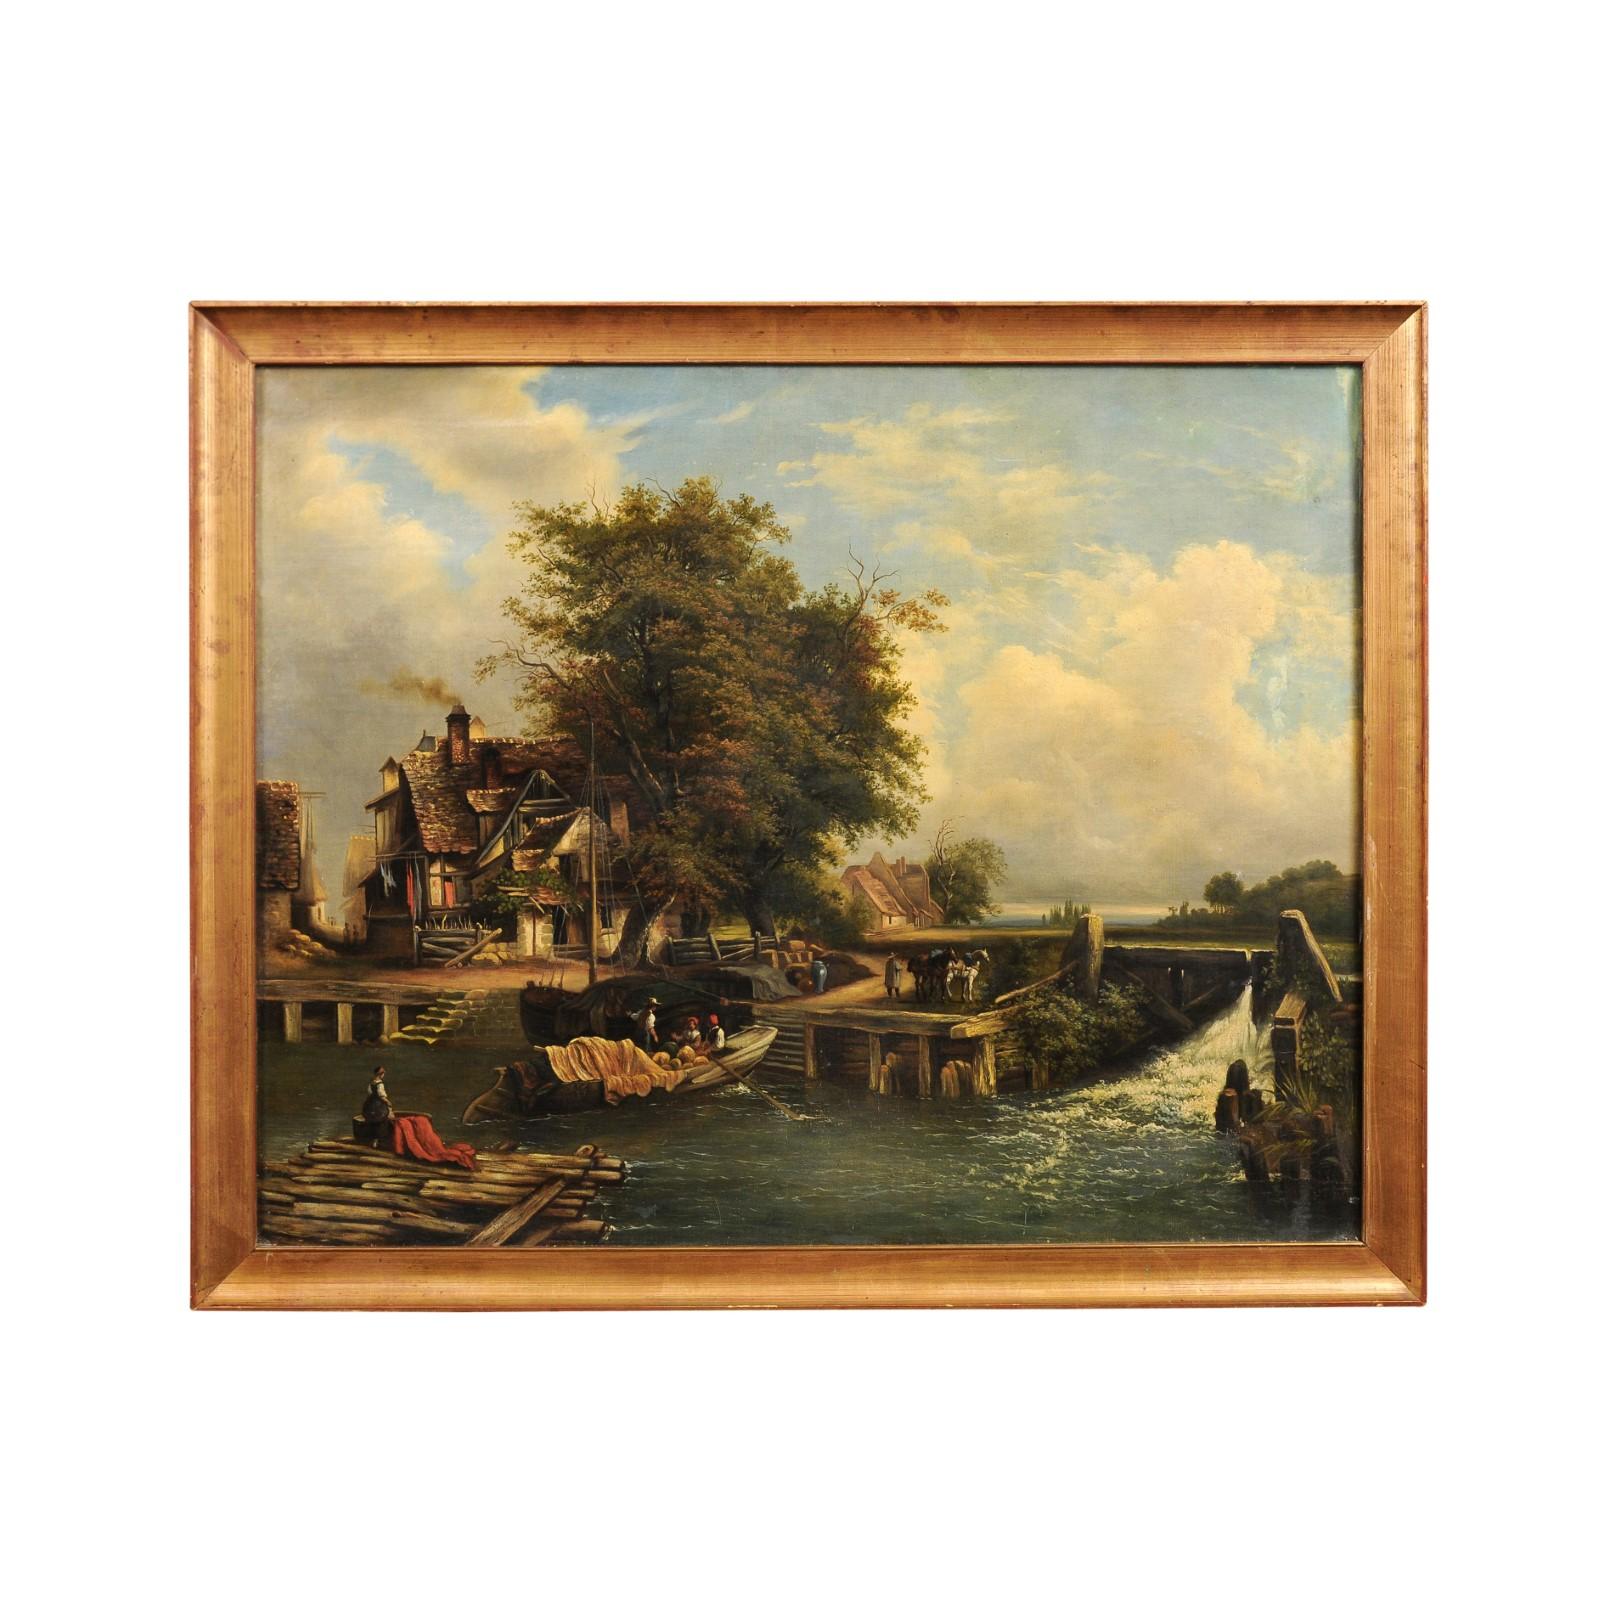 Peinture de paysage française à l'huile sur toile du XIXe siècle, représentant une scène de la vie quotidienne dans un village. Créée en France au cours du XIXe siècle, cette peinture à l'huile sur toile de format horizontal représente une scène